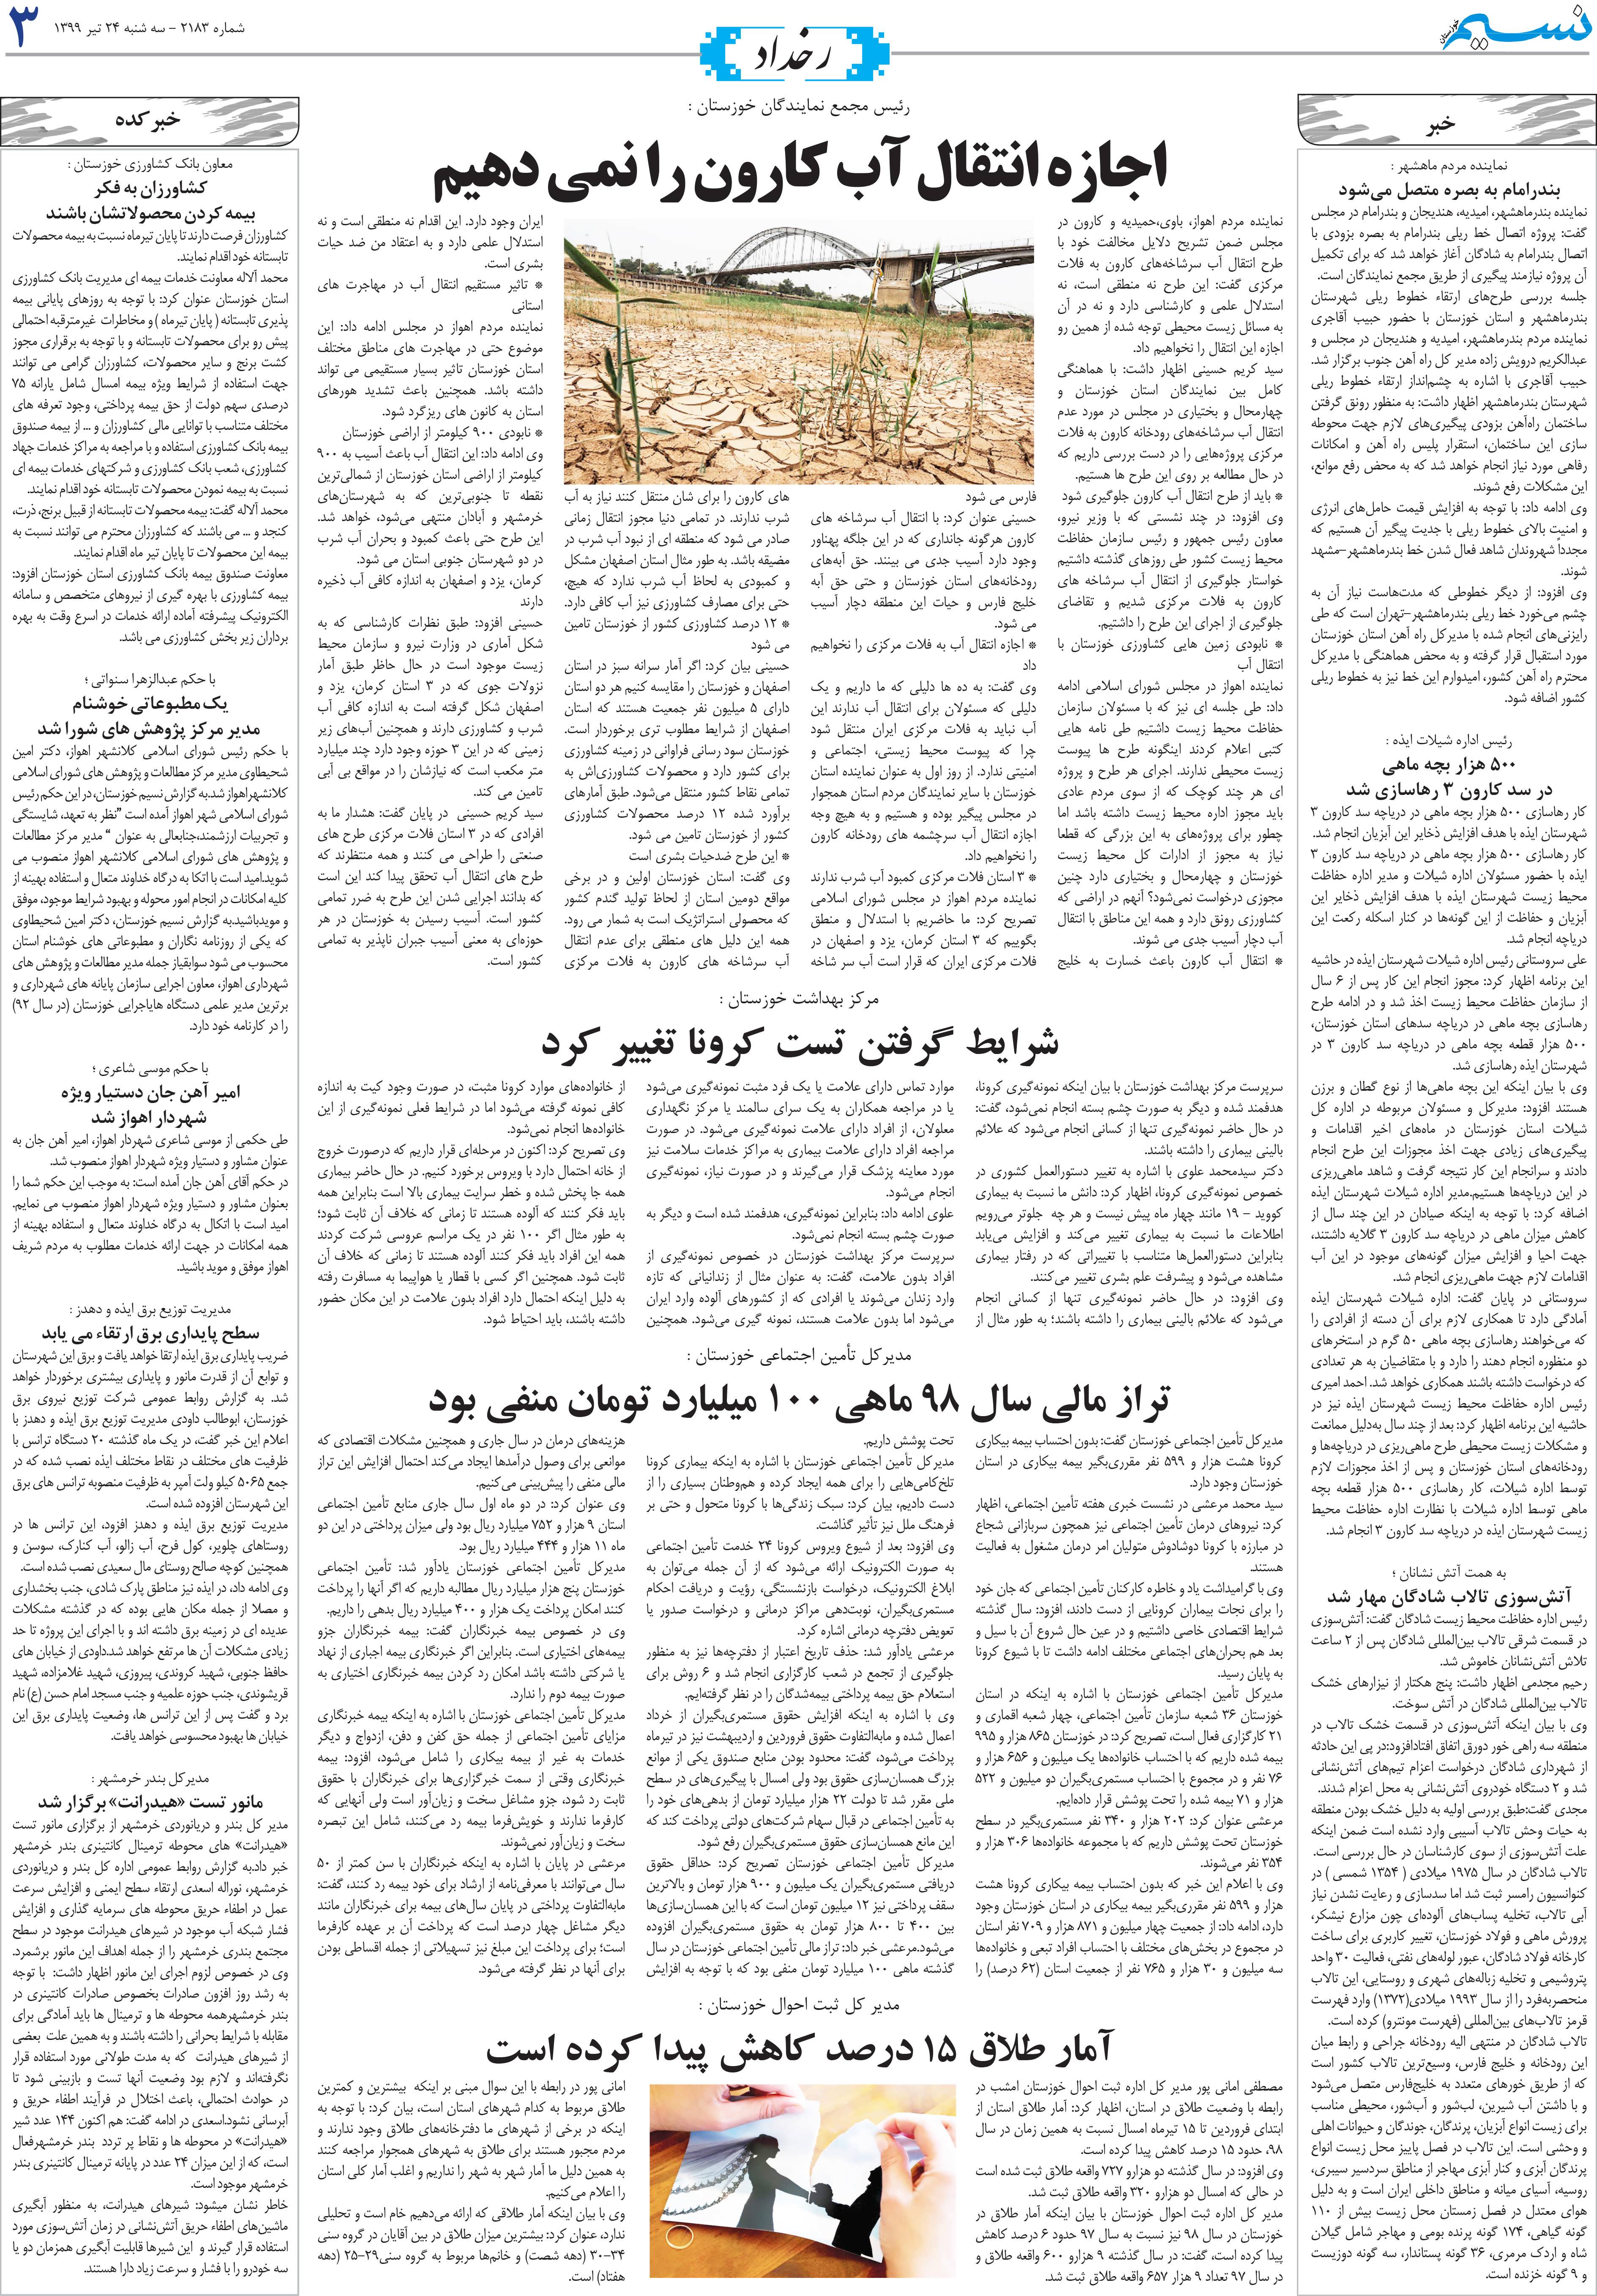 صفحه رخداد روزنامه نسیم شماره 2183